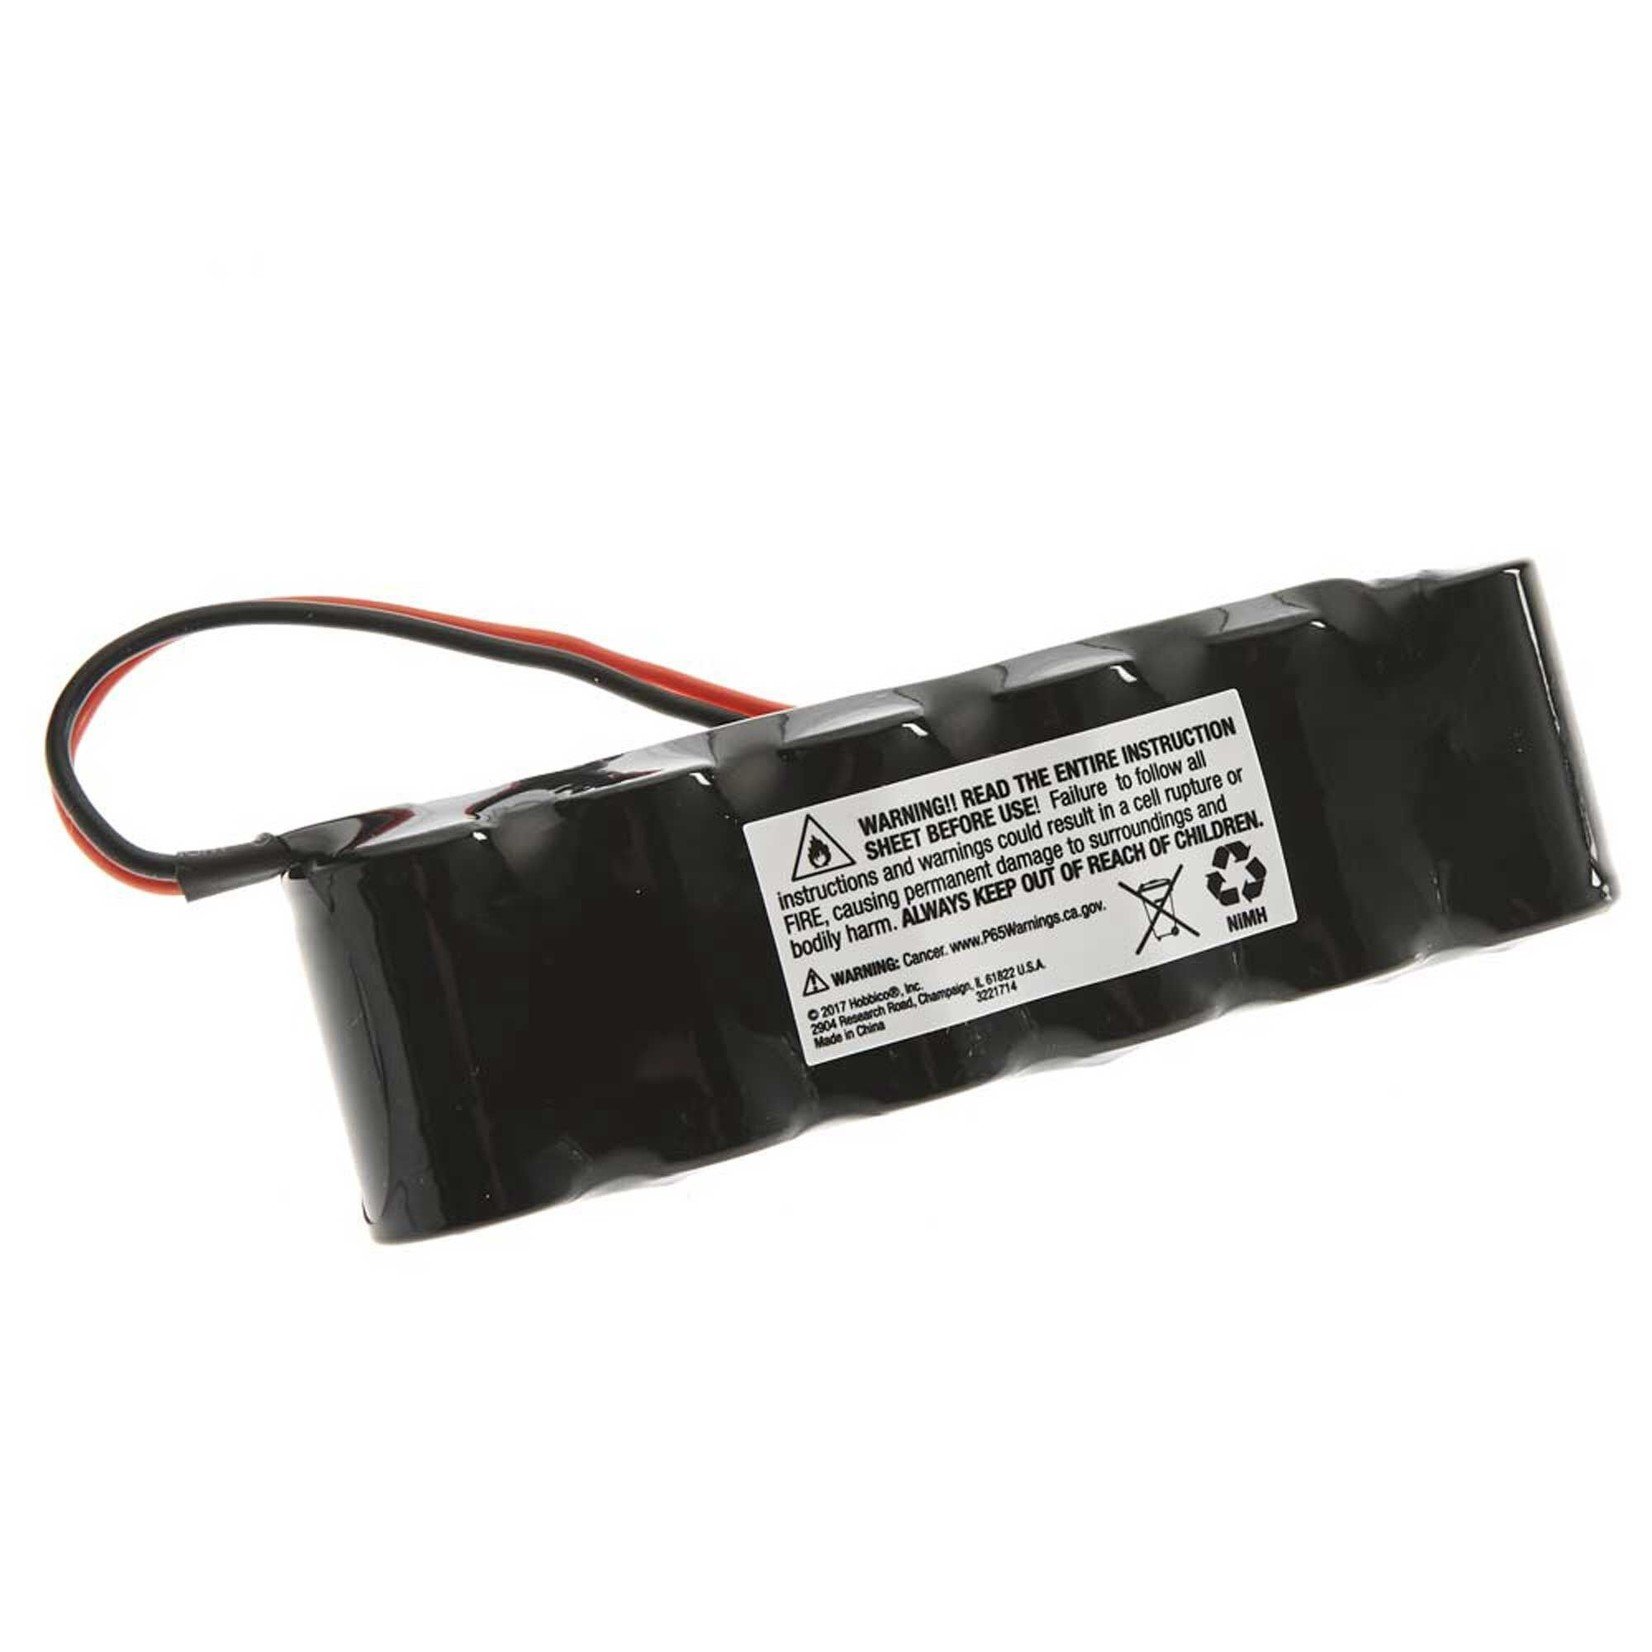 7.2V 1300mAh 6-Cell 2/3A Flat NiMH Battery: XH-1S (Losi Mini Plug)